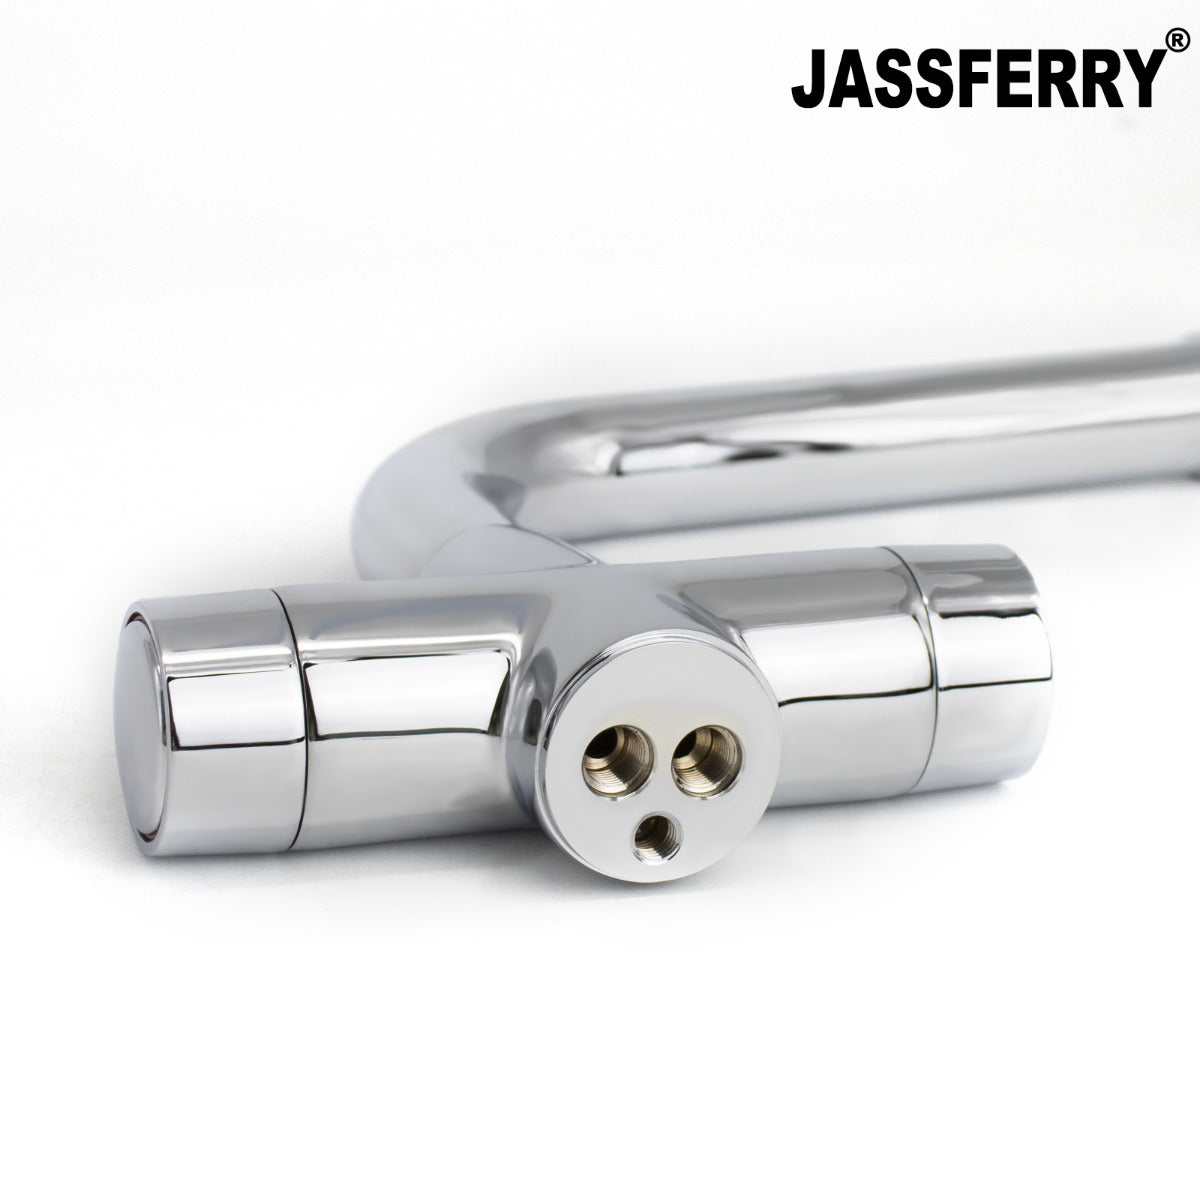 JassferryJASSFERRY New Kitchen Sink Tap Mixer Dual Flow Quarter Turn Dial Monobloc BrassKitchen taps